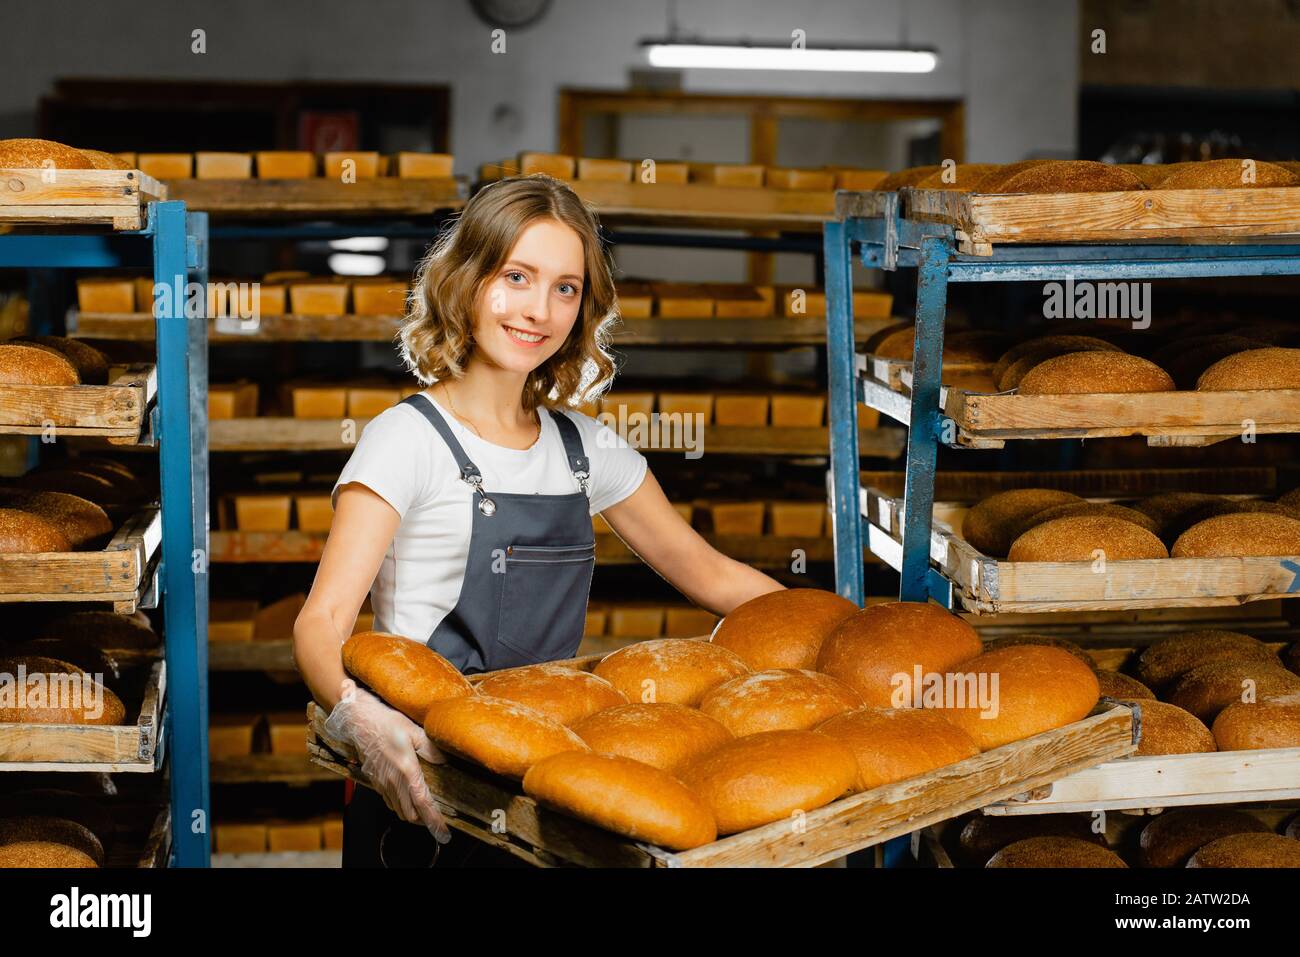 Il panettiere della ragazza tiene un vassoio con il pane caldo fresco nelle sue mani contro lo sfondo delle mensole con il pane fresco in una panetteria. Produzione di pane industriale Foto Stock